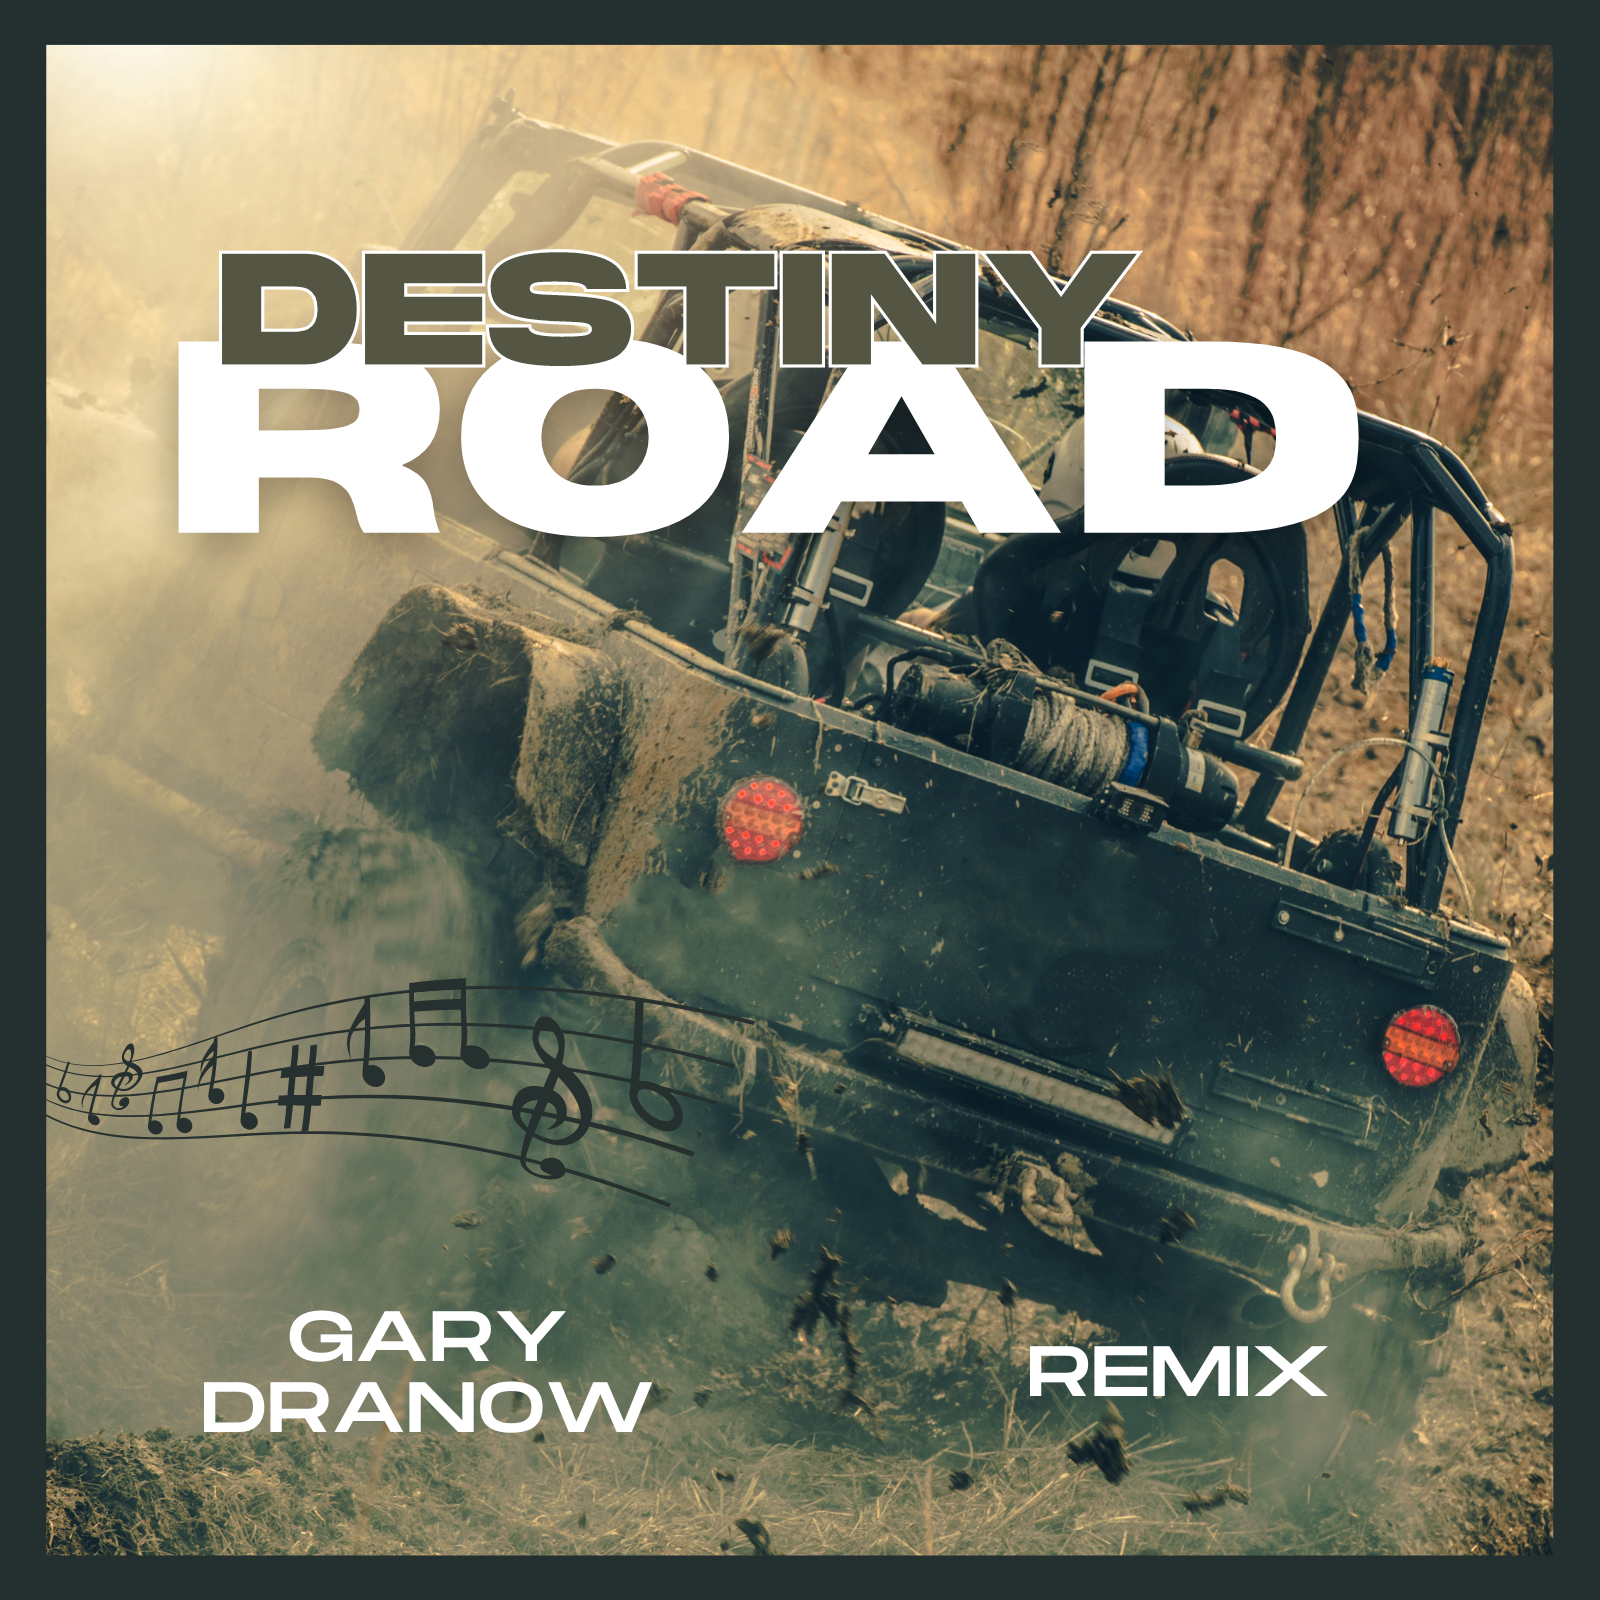 Gary Dranow – “Mellow Drama – Remix”